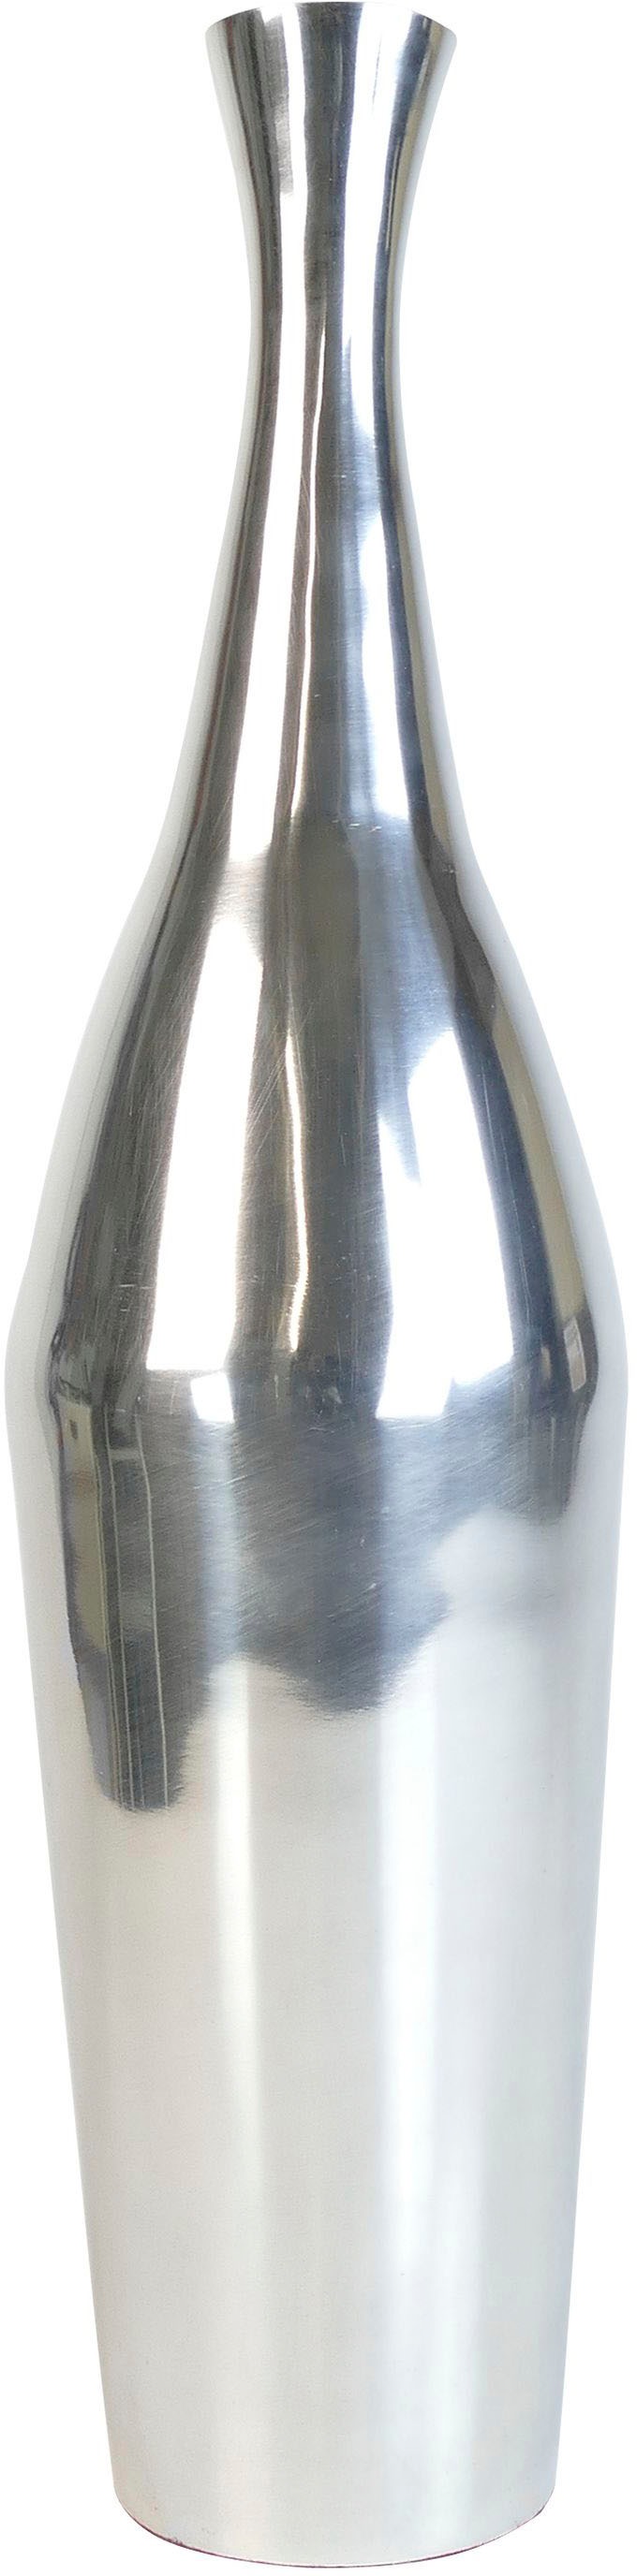 ARTRA Dekovase »Aluminiumvase 'Bottle' M - Hoch, Dekoration« günstig kaufen